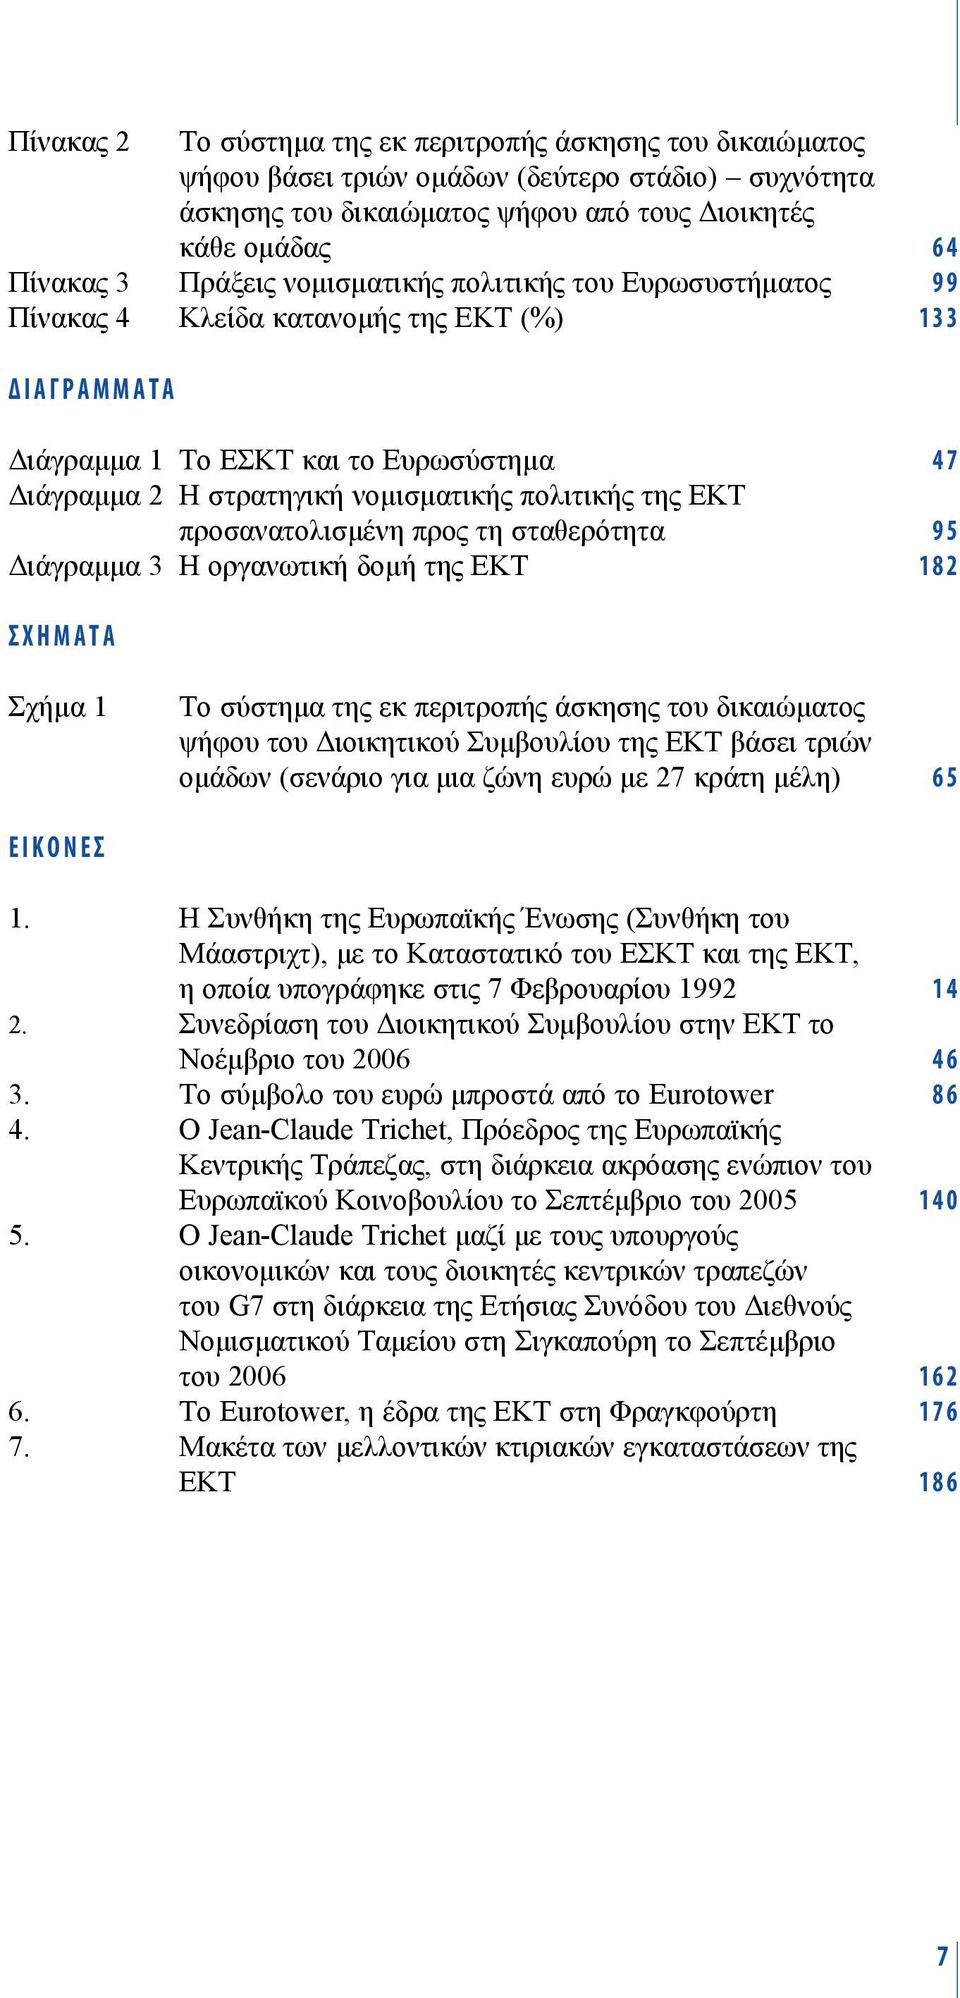 προσανατολισμένη προς τη σταθερότητα 95 Διάγραμμα 3 Η οργανωτική δομή της ΕΚΤ 182 ΣΧΗΜΑTA Σχήμα 1 Το σύστημα της εκ περιτροπής άσκησης του δικαιώματος ψήφου του Διοικητικού Συμβουλίου της ΕΚΤ βάσει